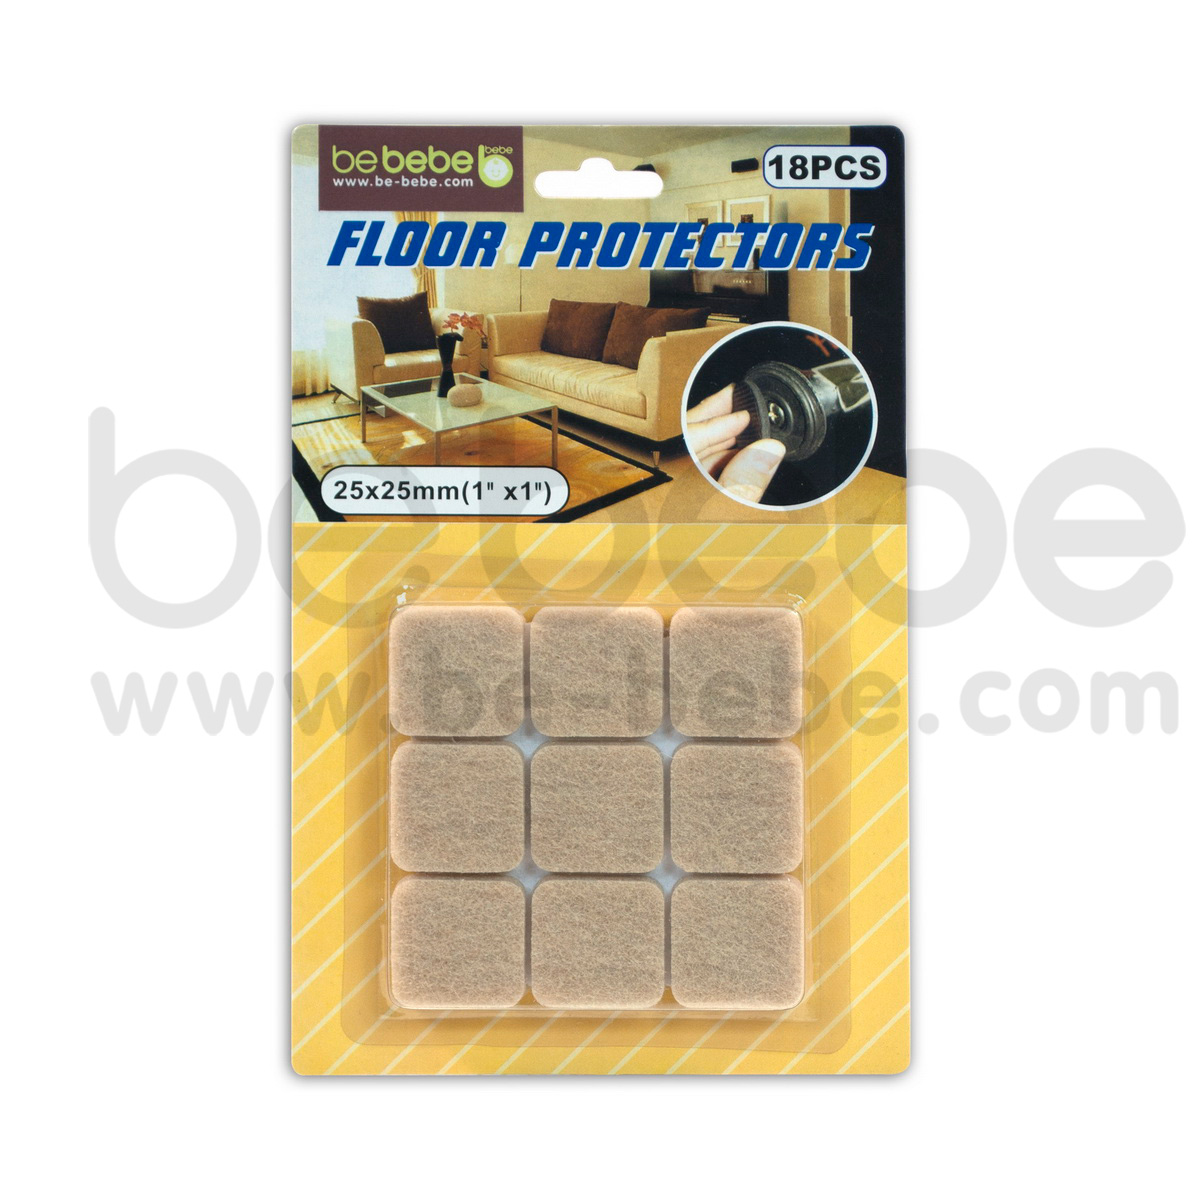 be bebe : Floor Protector /Beige 18 pcs.(25x25mm.)